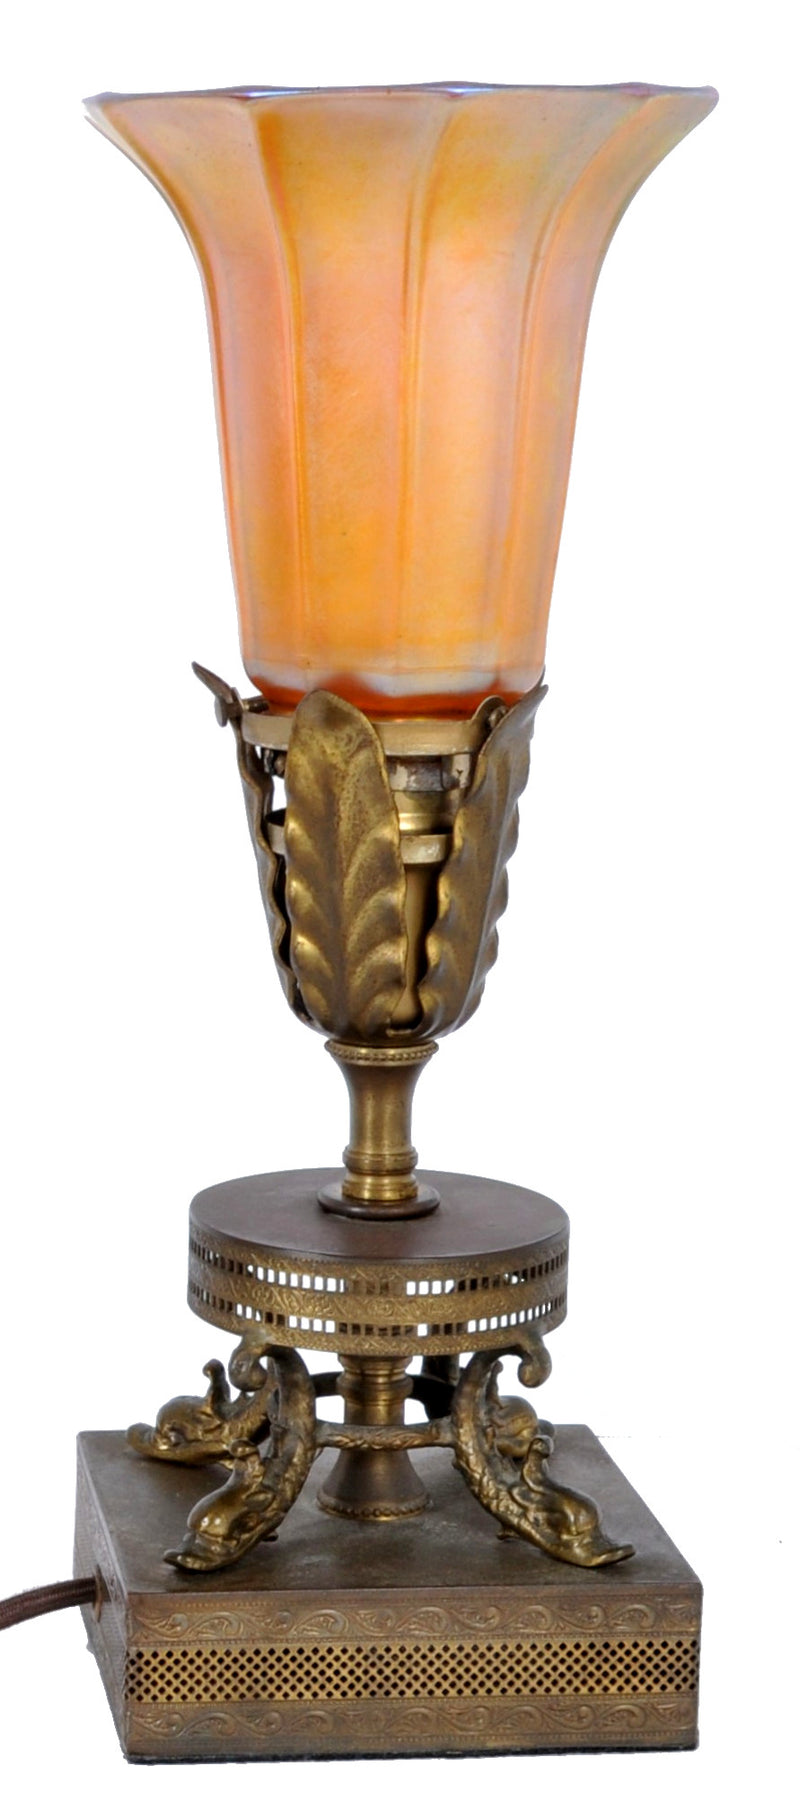 Antique American Art Nouveau Table Lamp by Quezal, Circa 1910